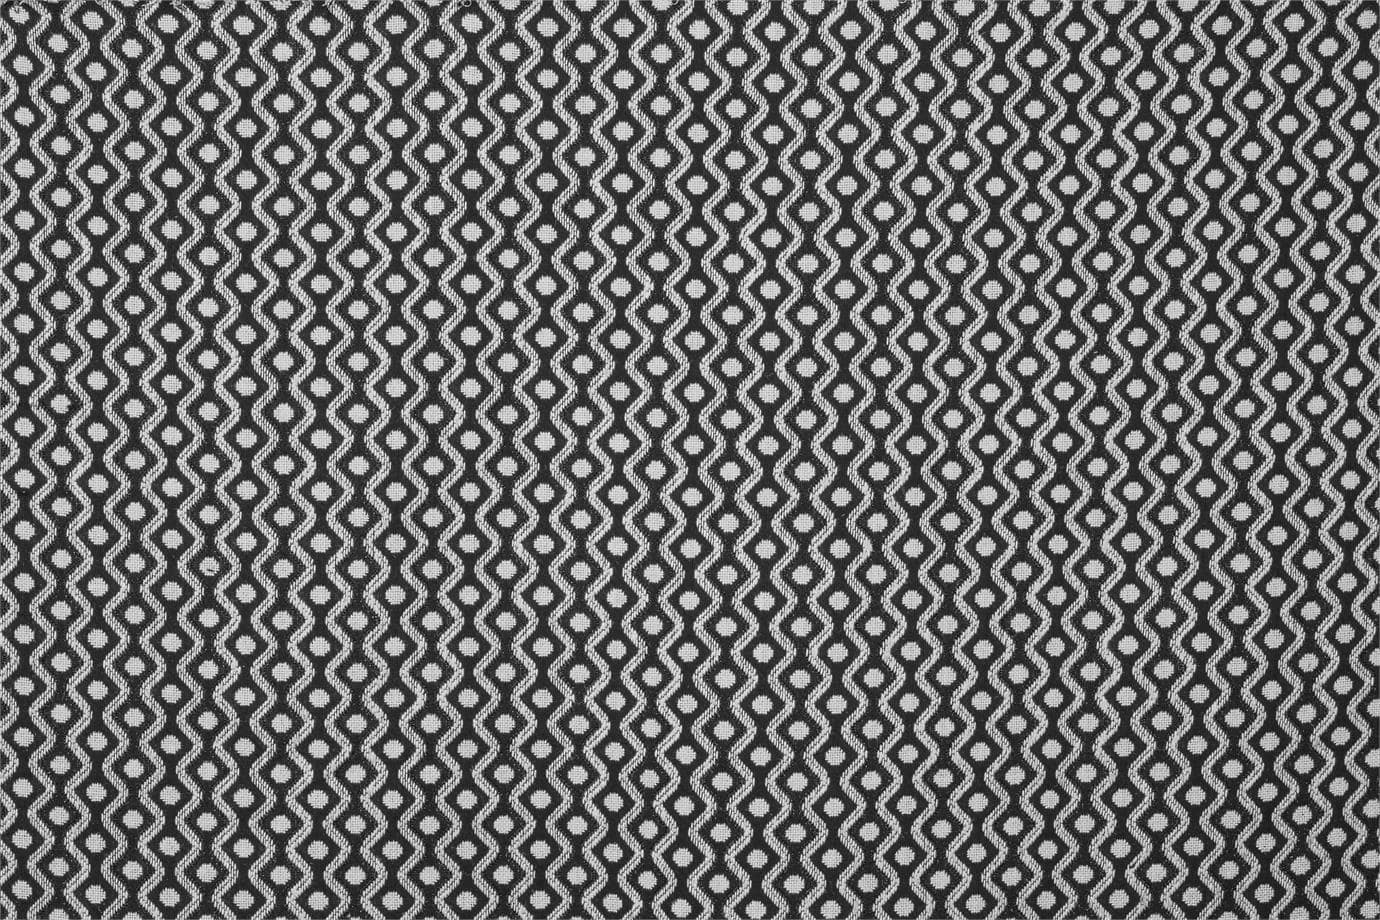 J1843 POGGIOREALE 030 Lava home decoration fabric